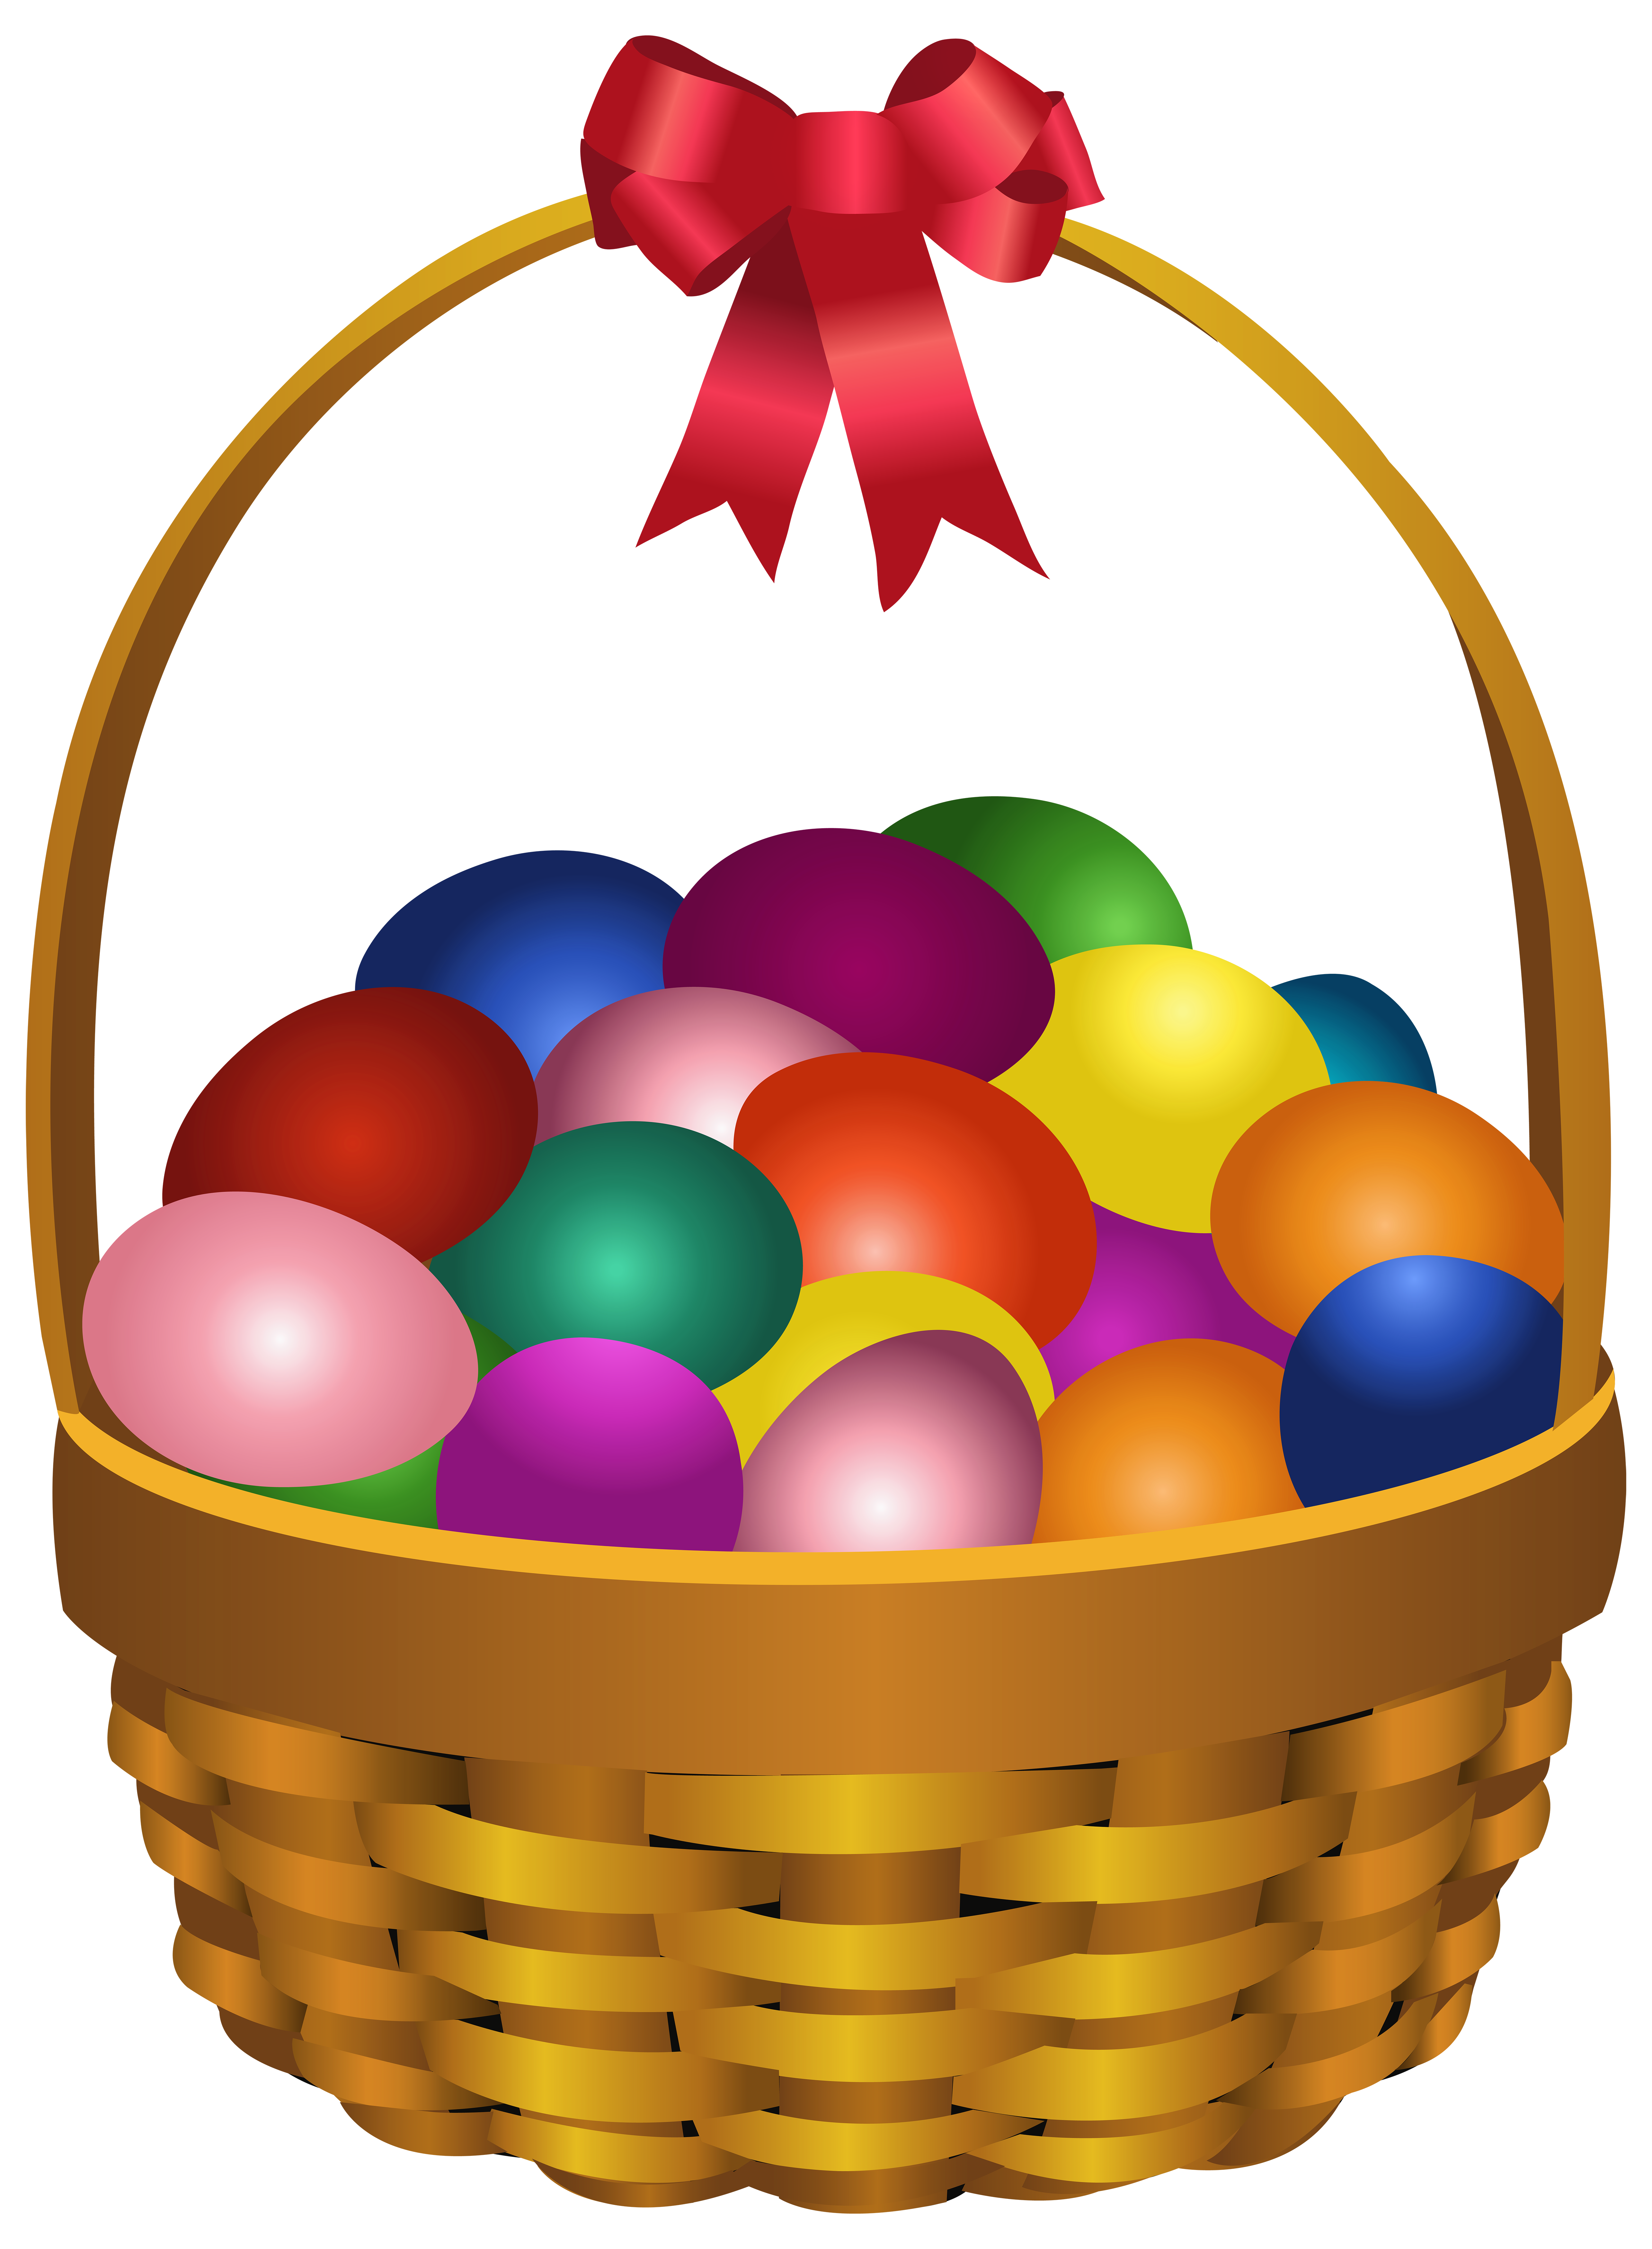 Easter Eggs in Basket Transparent PNG Clip Art Image